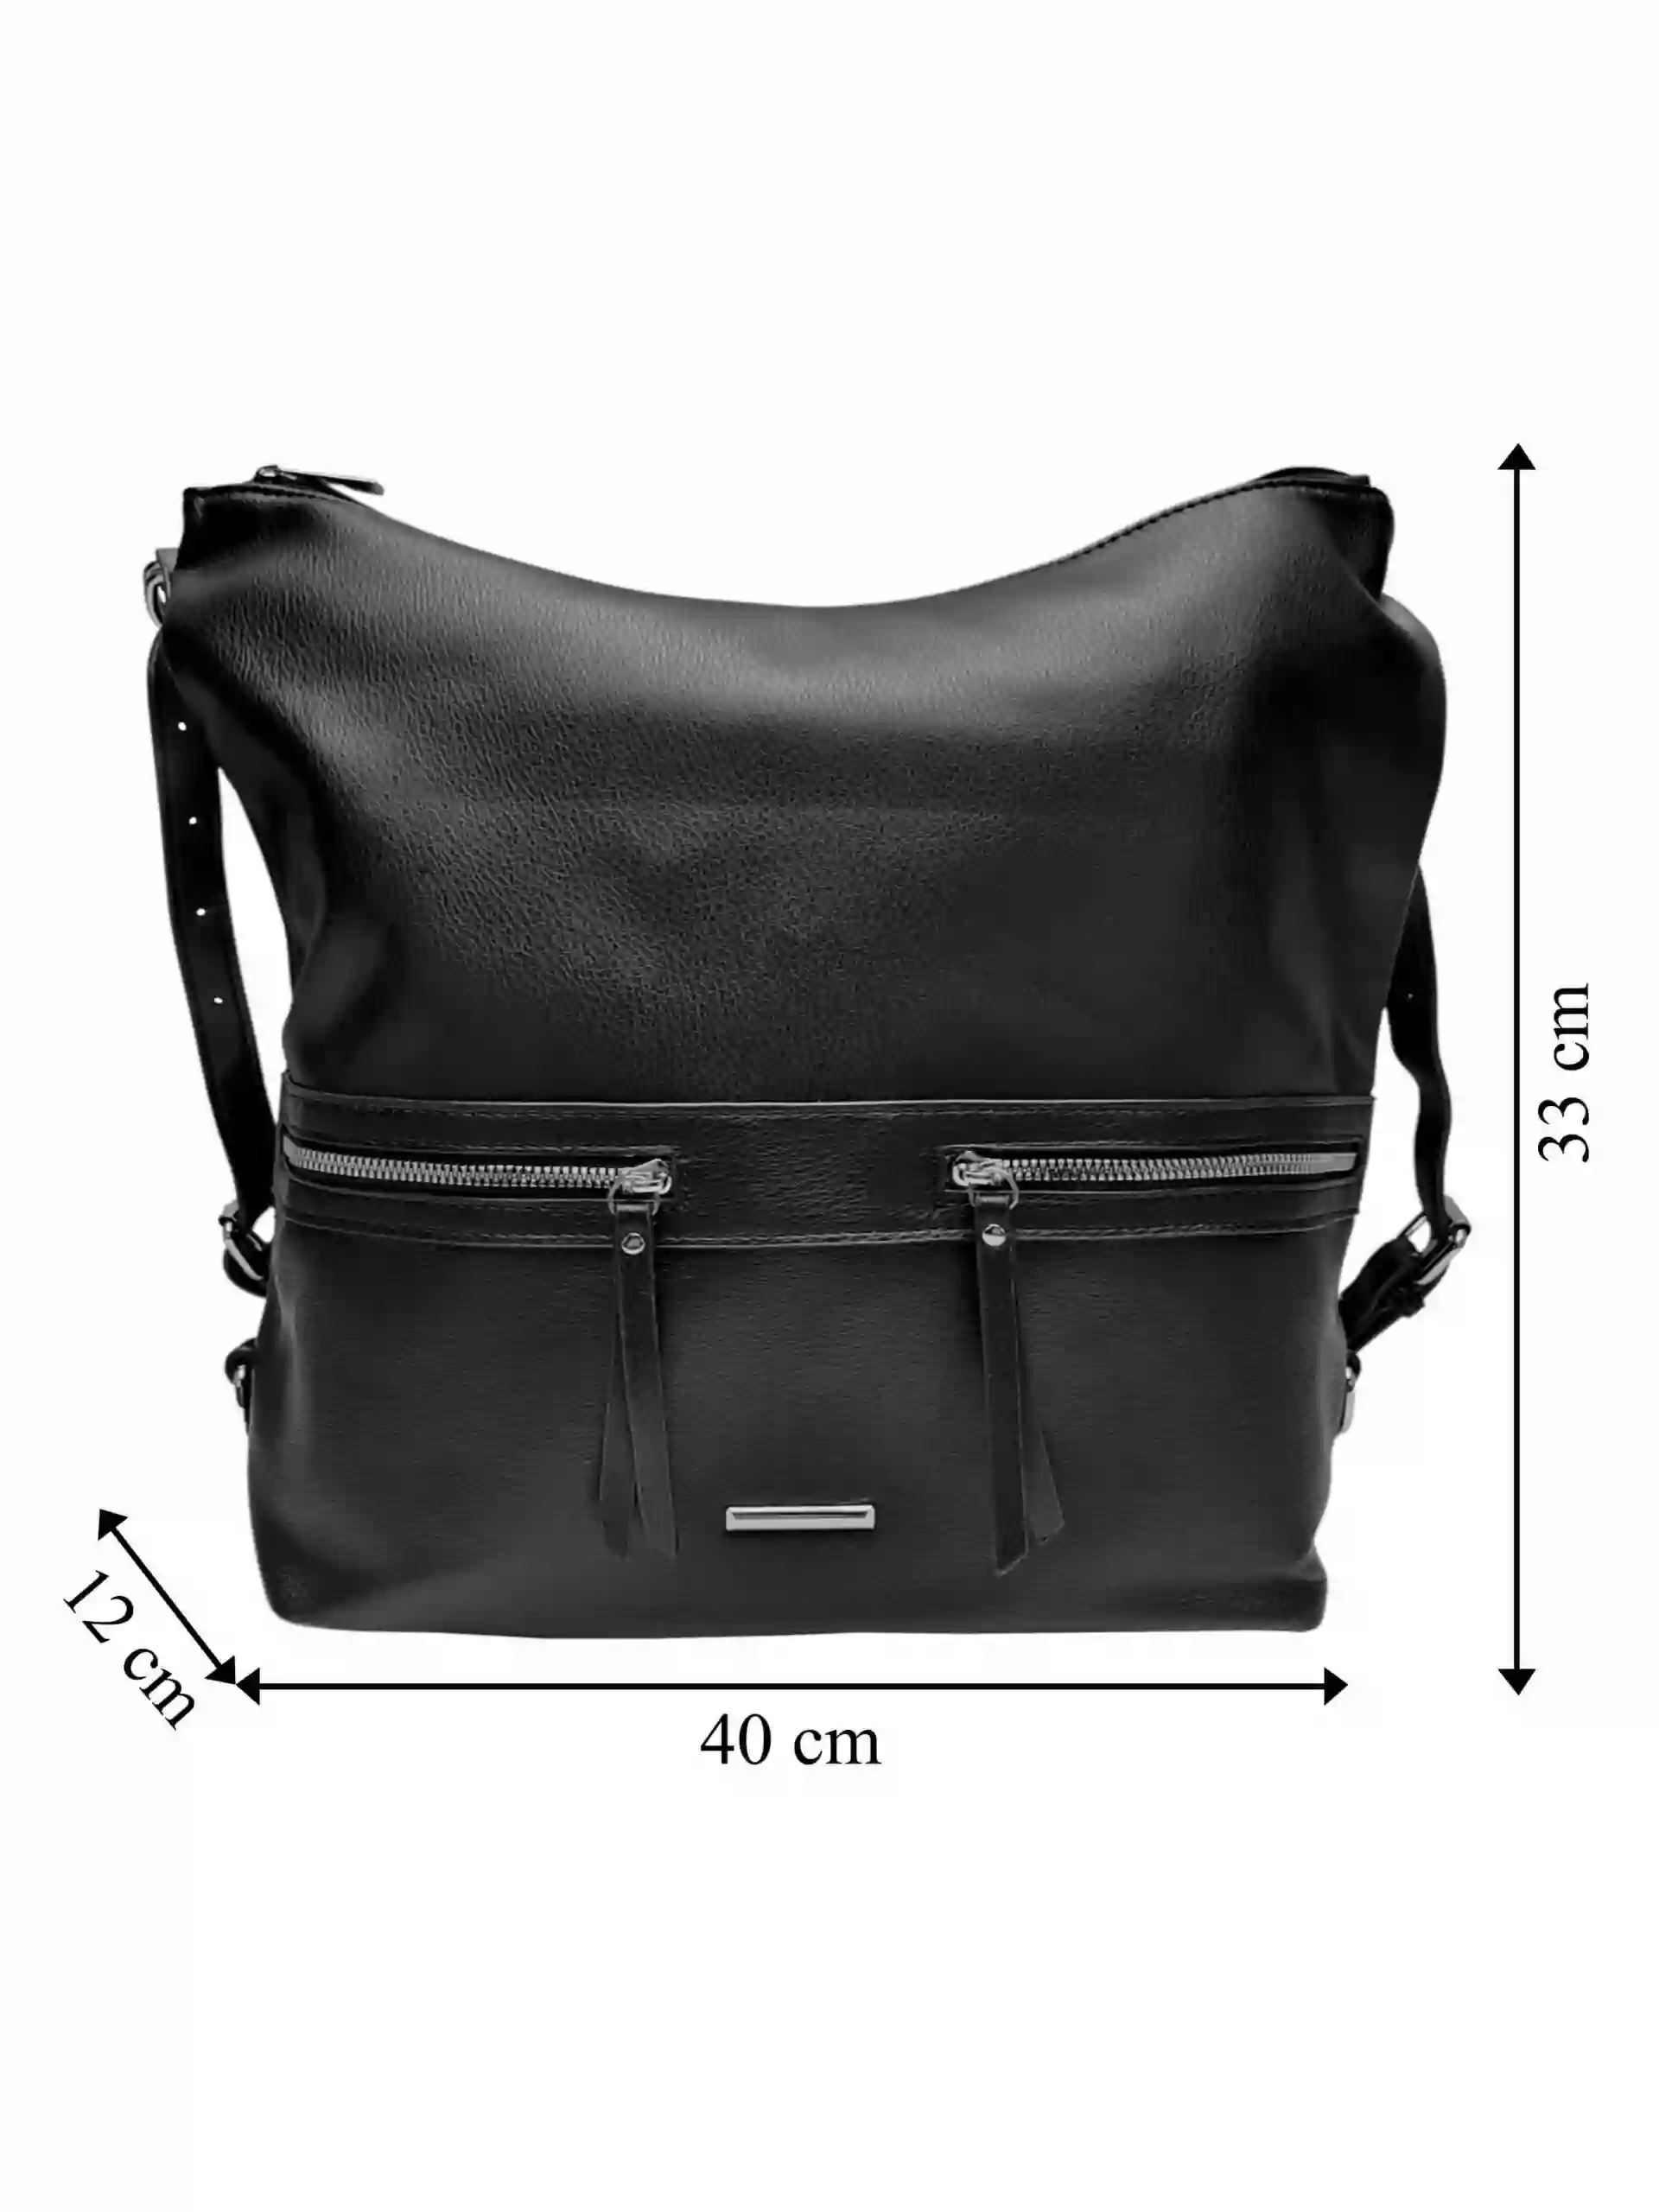 Velká černá kabelka a batoh 2v1, Tapple, X366, přední strana kabelko-batohu 2v1 s rozměry